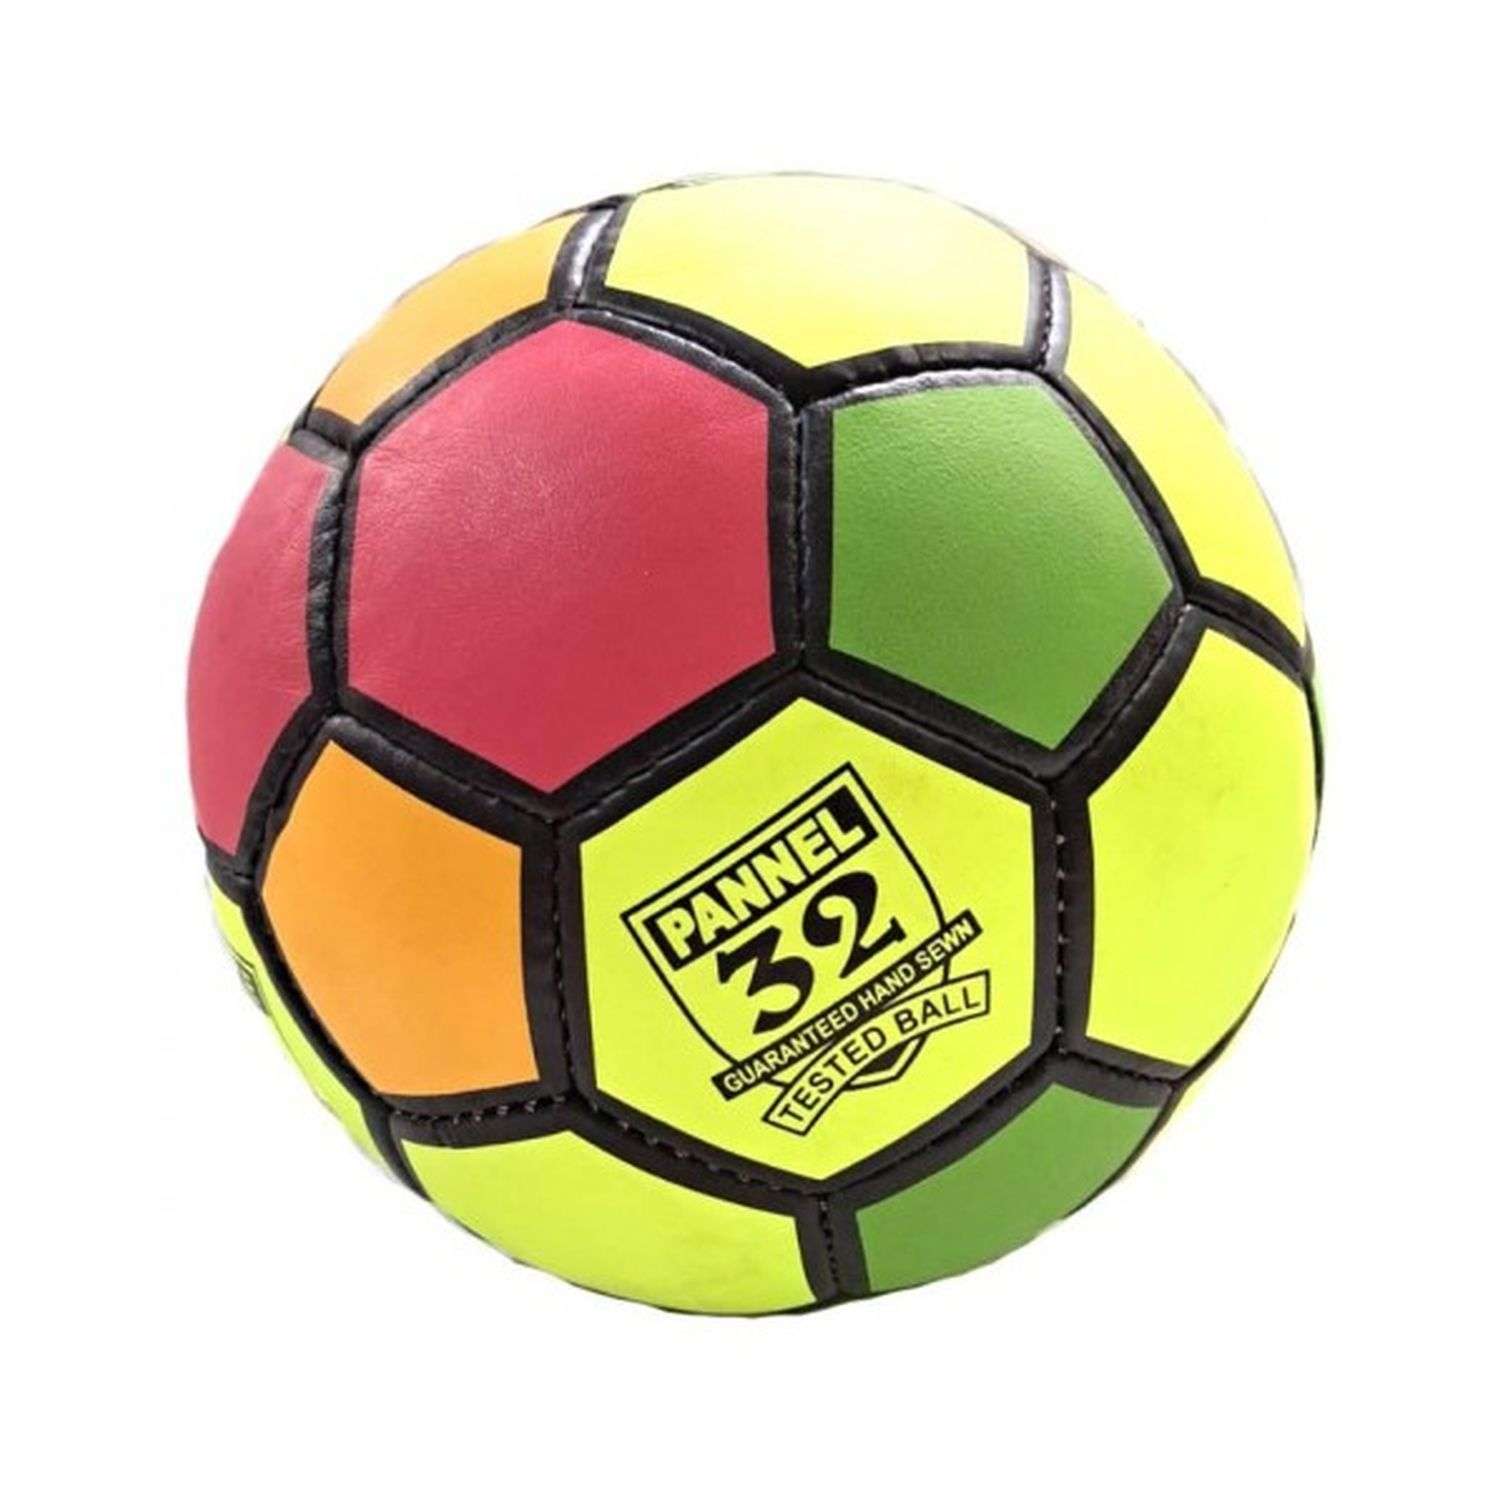 Разноцветный футбольный мяч Uniglodis 32 панели размер 5 - фото 2